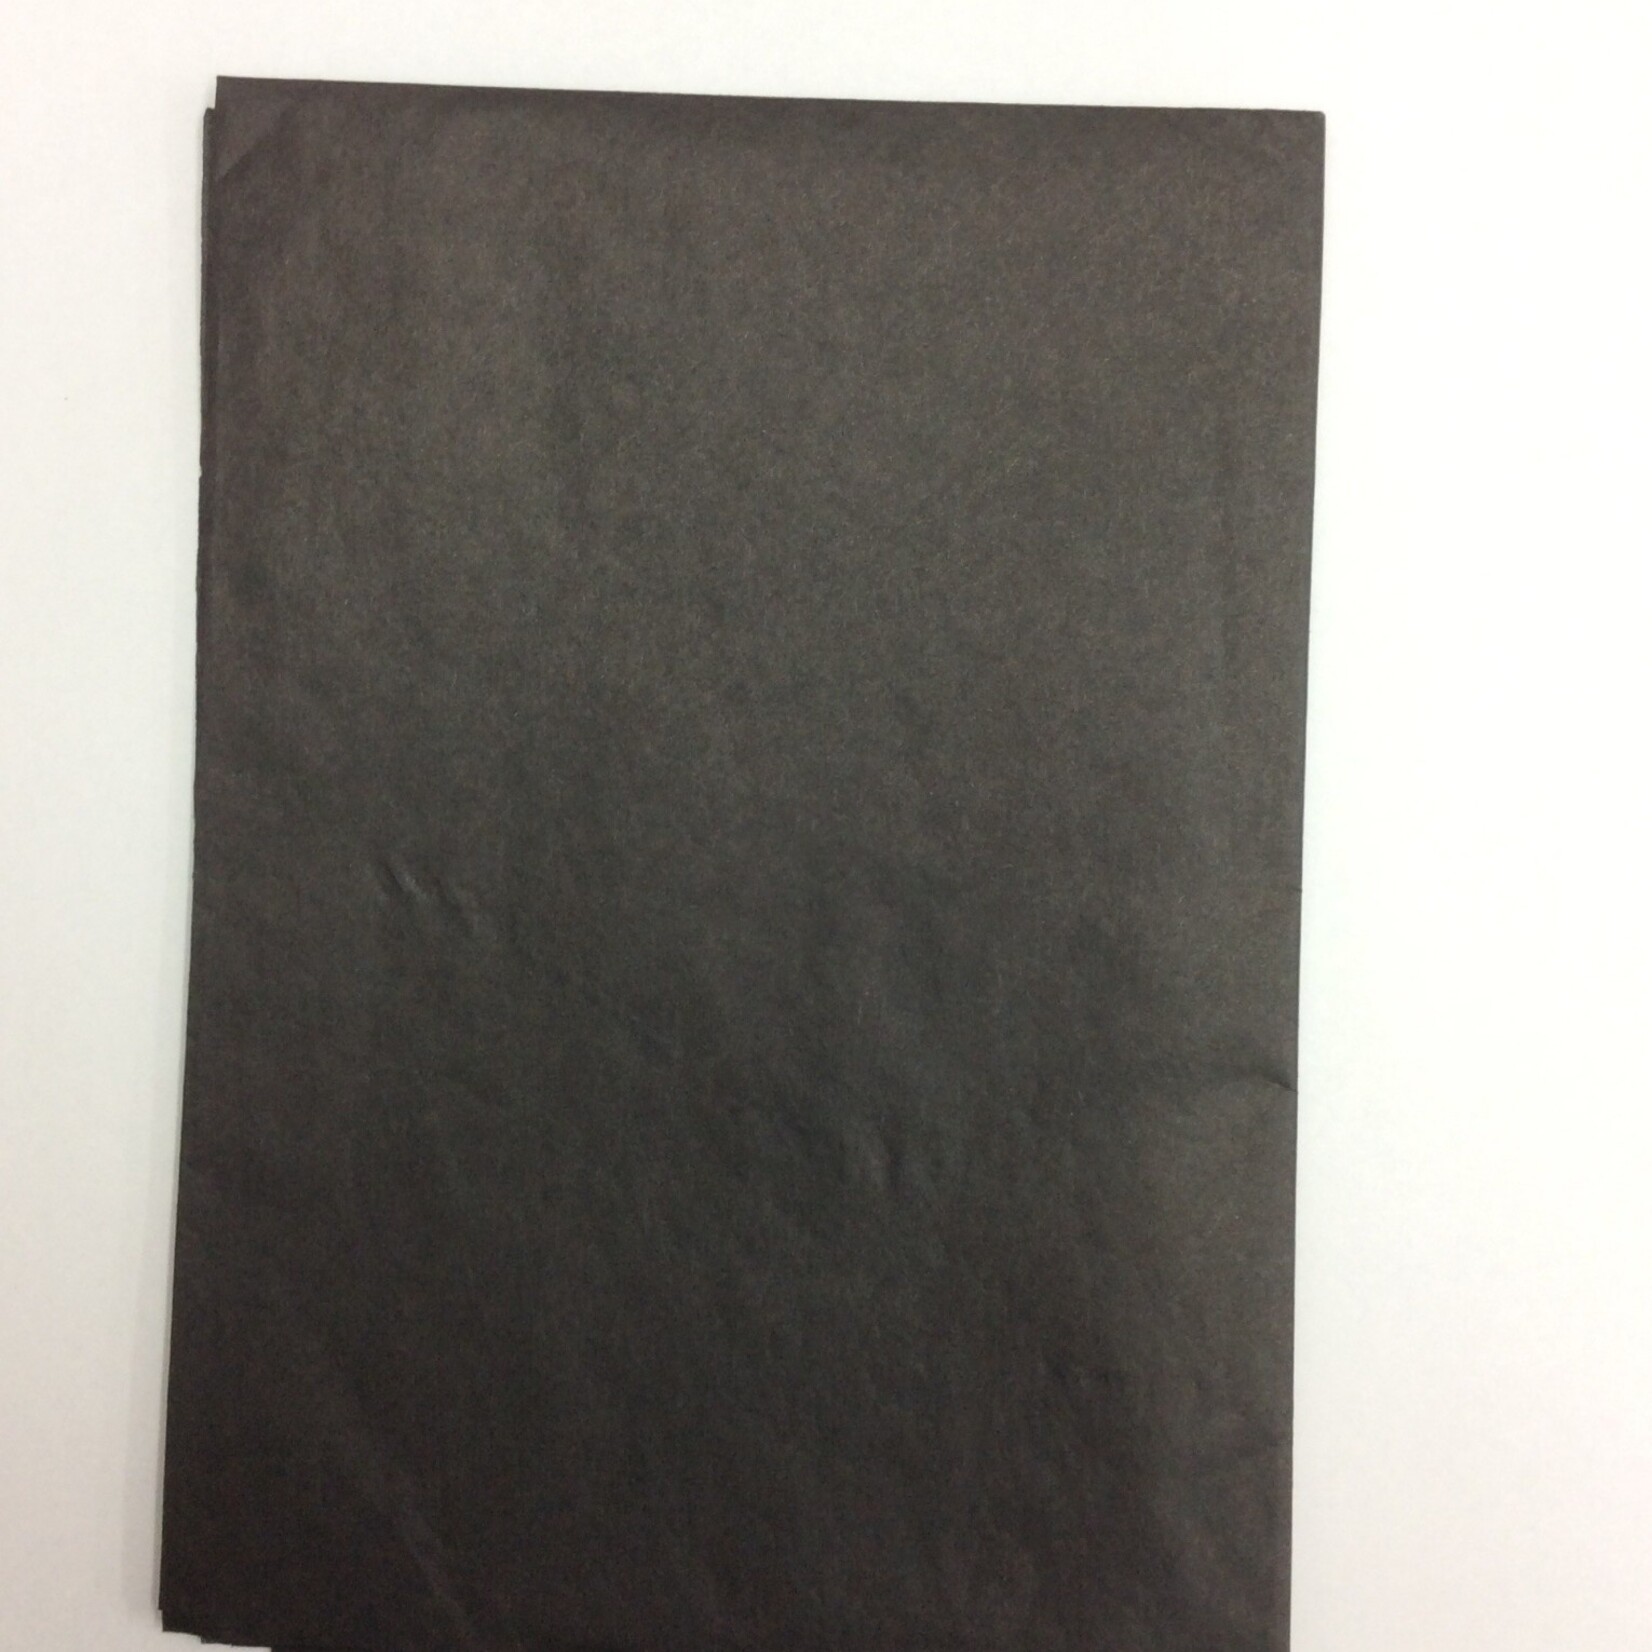 Kite Paper Quire (24pcs) Black